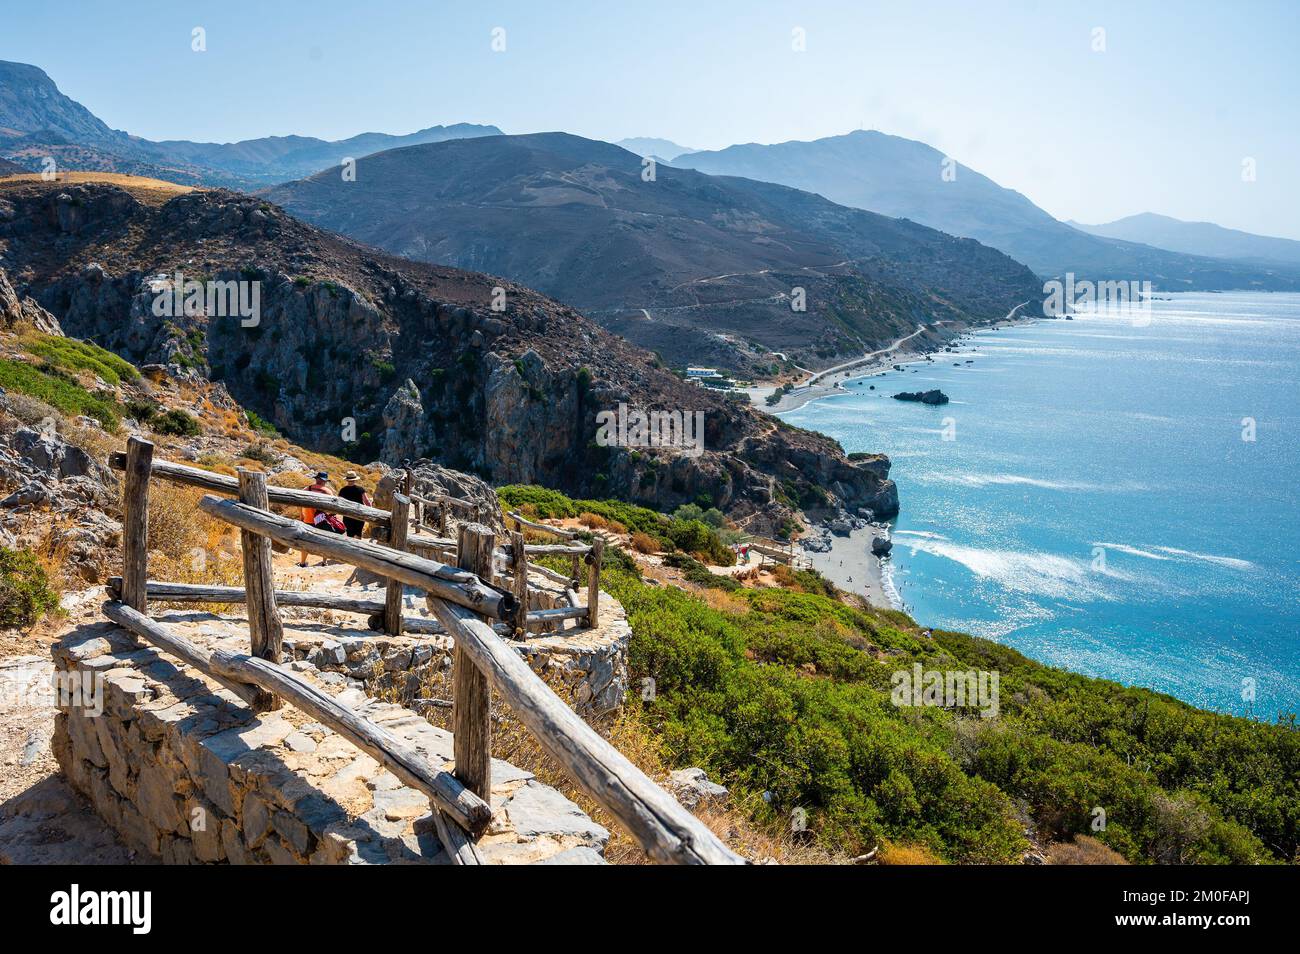 Blick auf den berühmten Preveli-Strand im Sommer, Kreta, Griechenland. Berühmter Strand mit Fluss und Palmen im libyschen Meer. Stockfoto